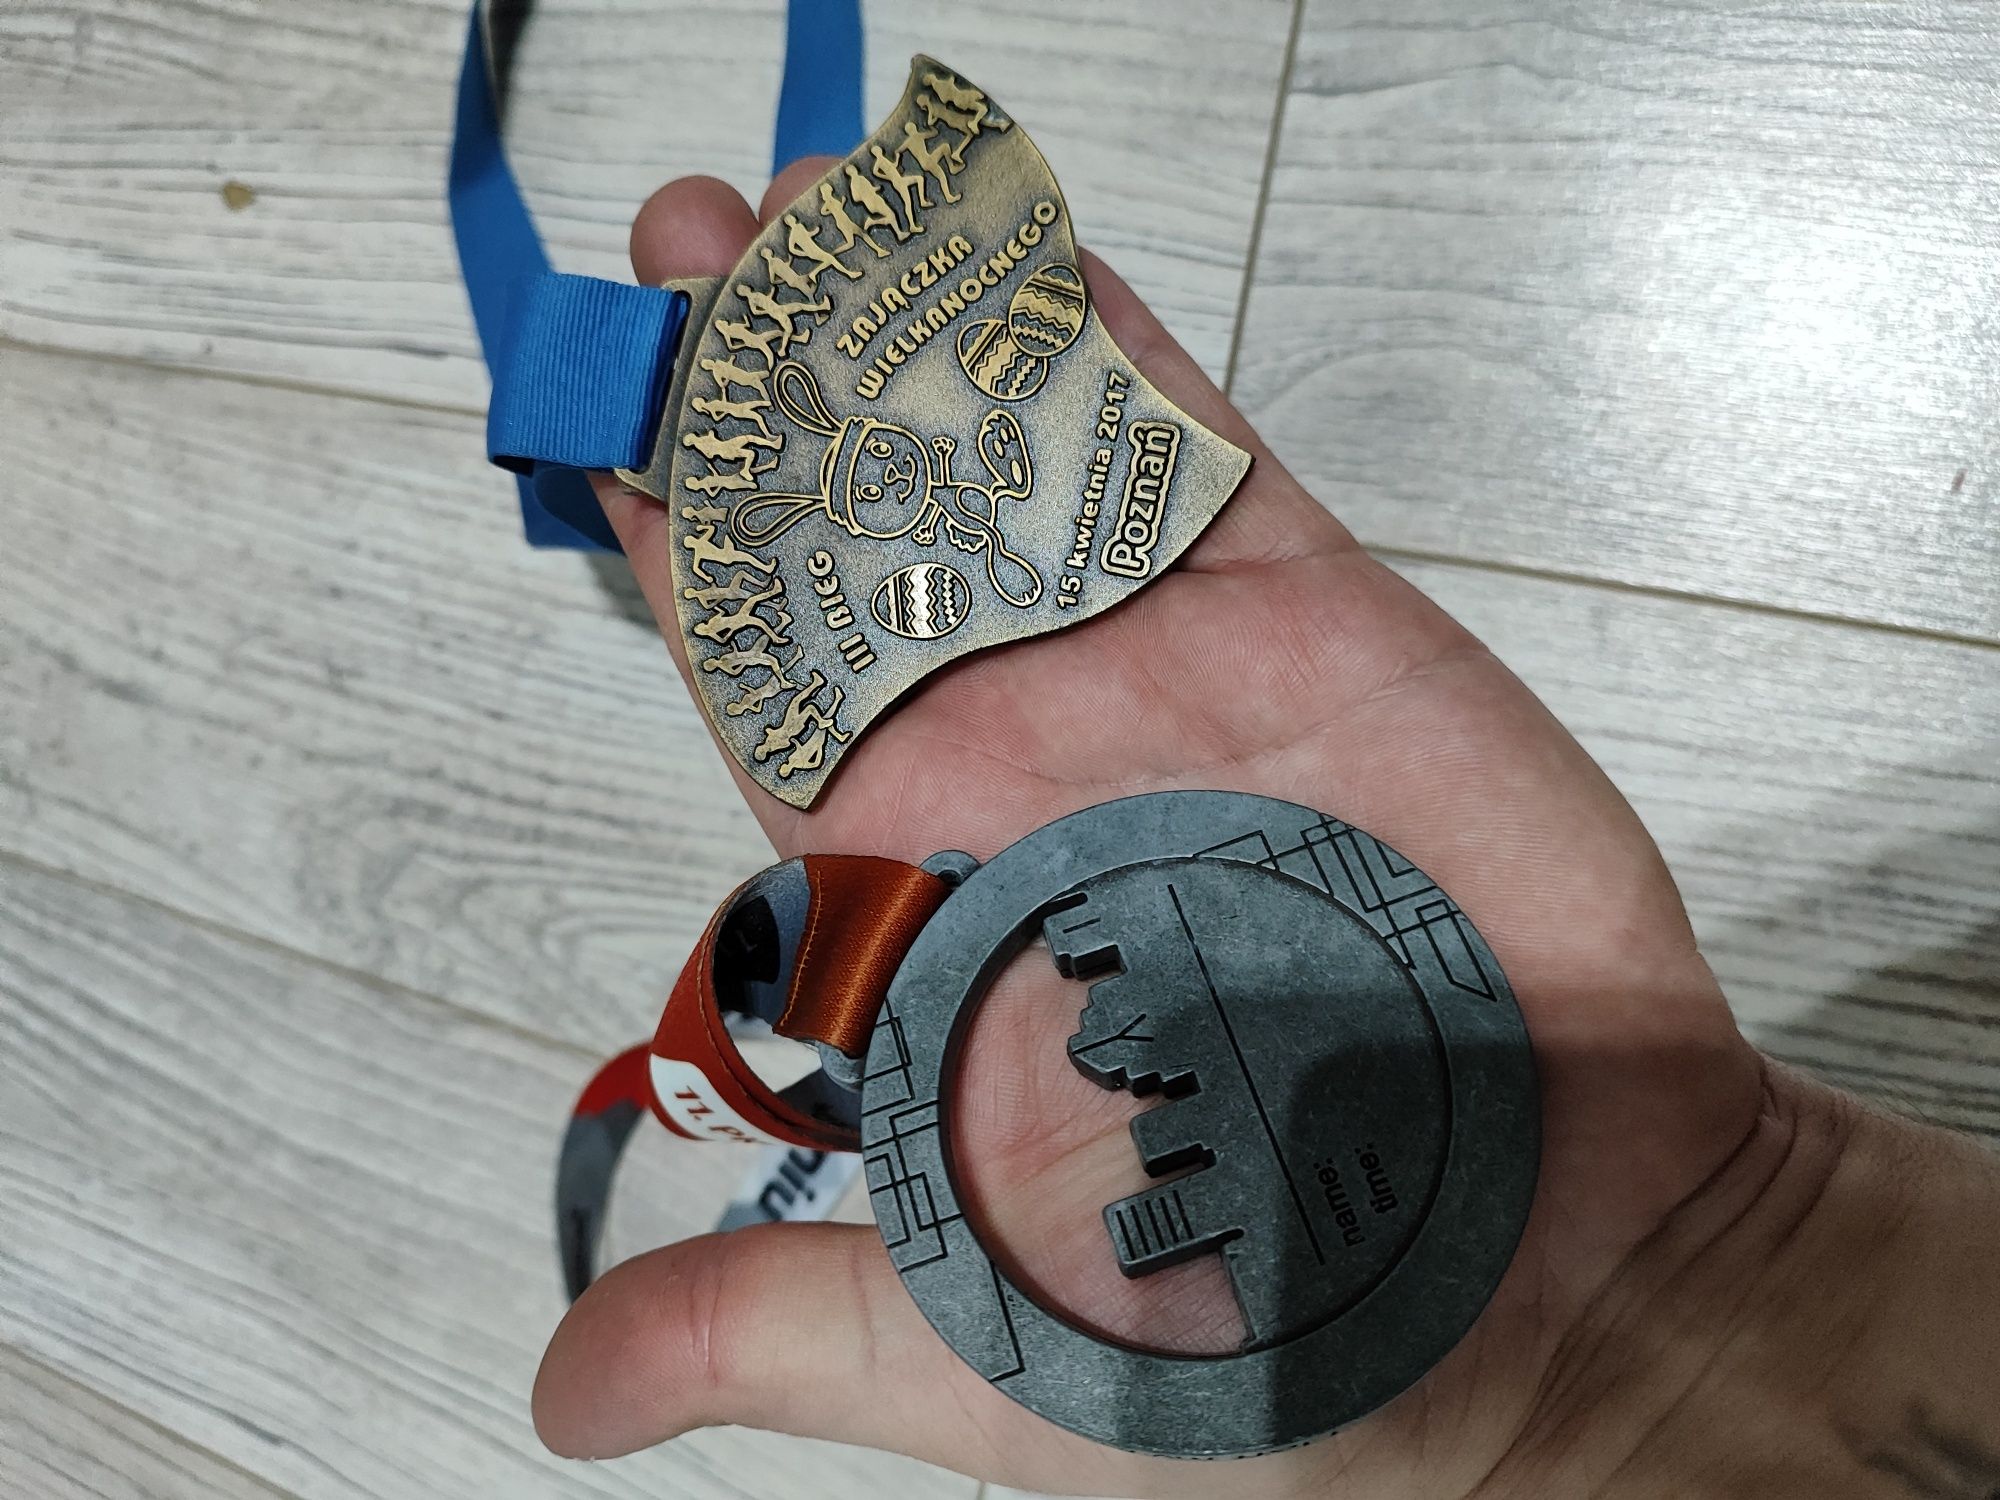 Dwa medale maraton Poznań